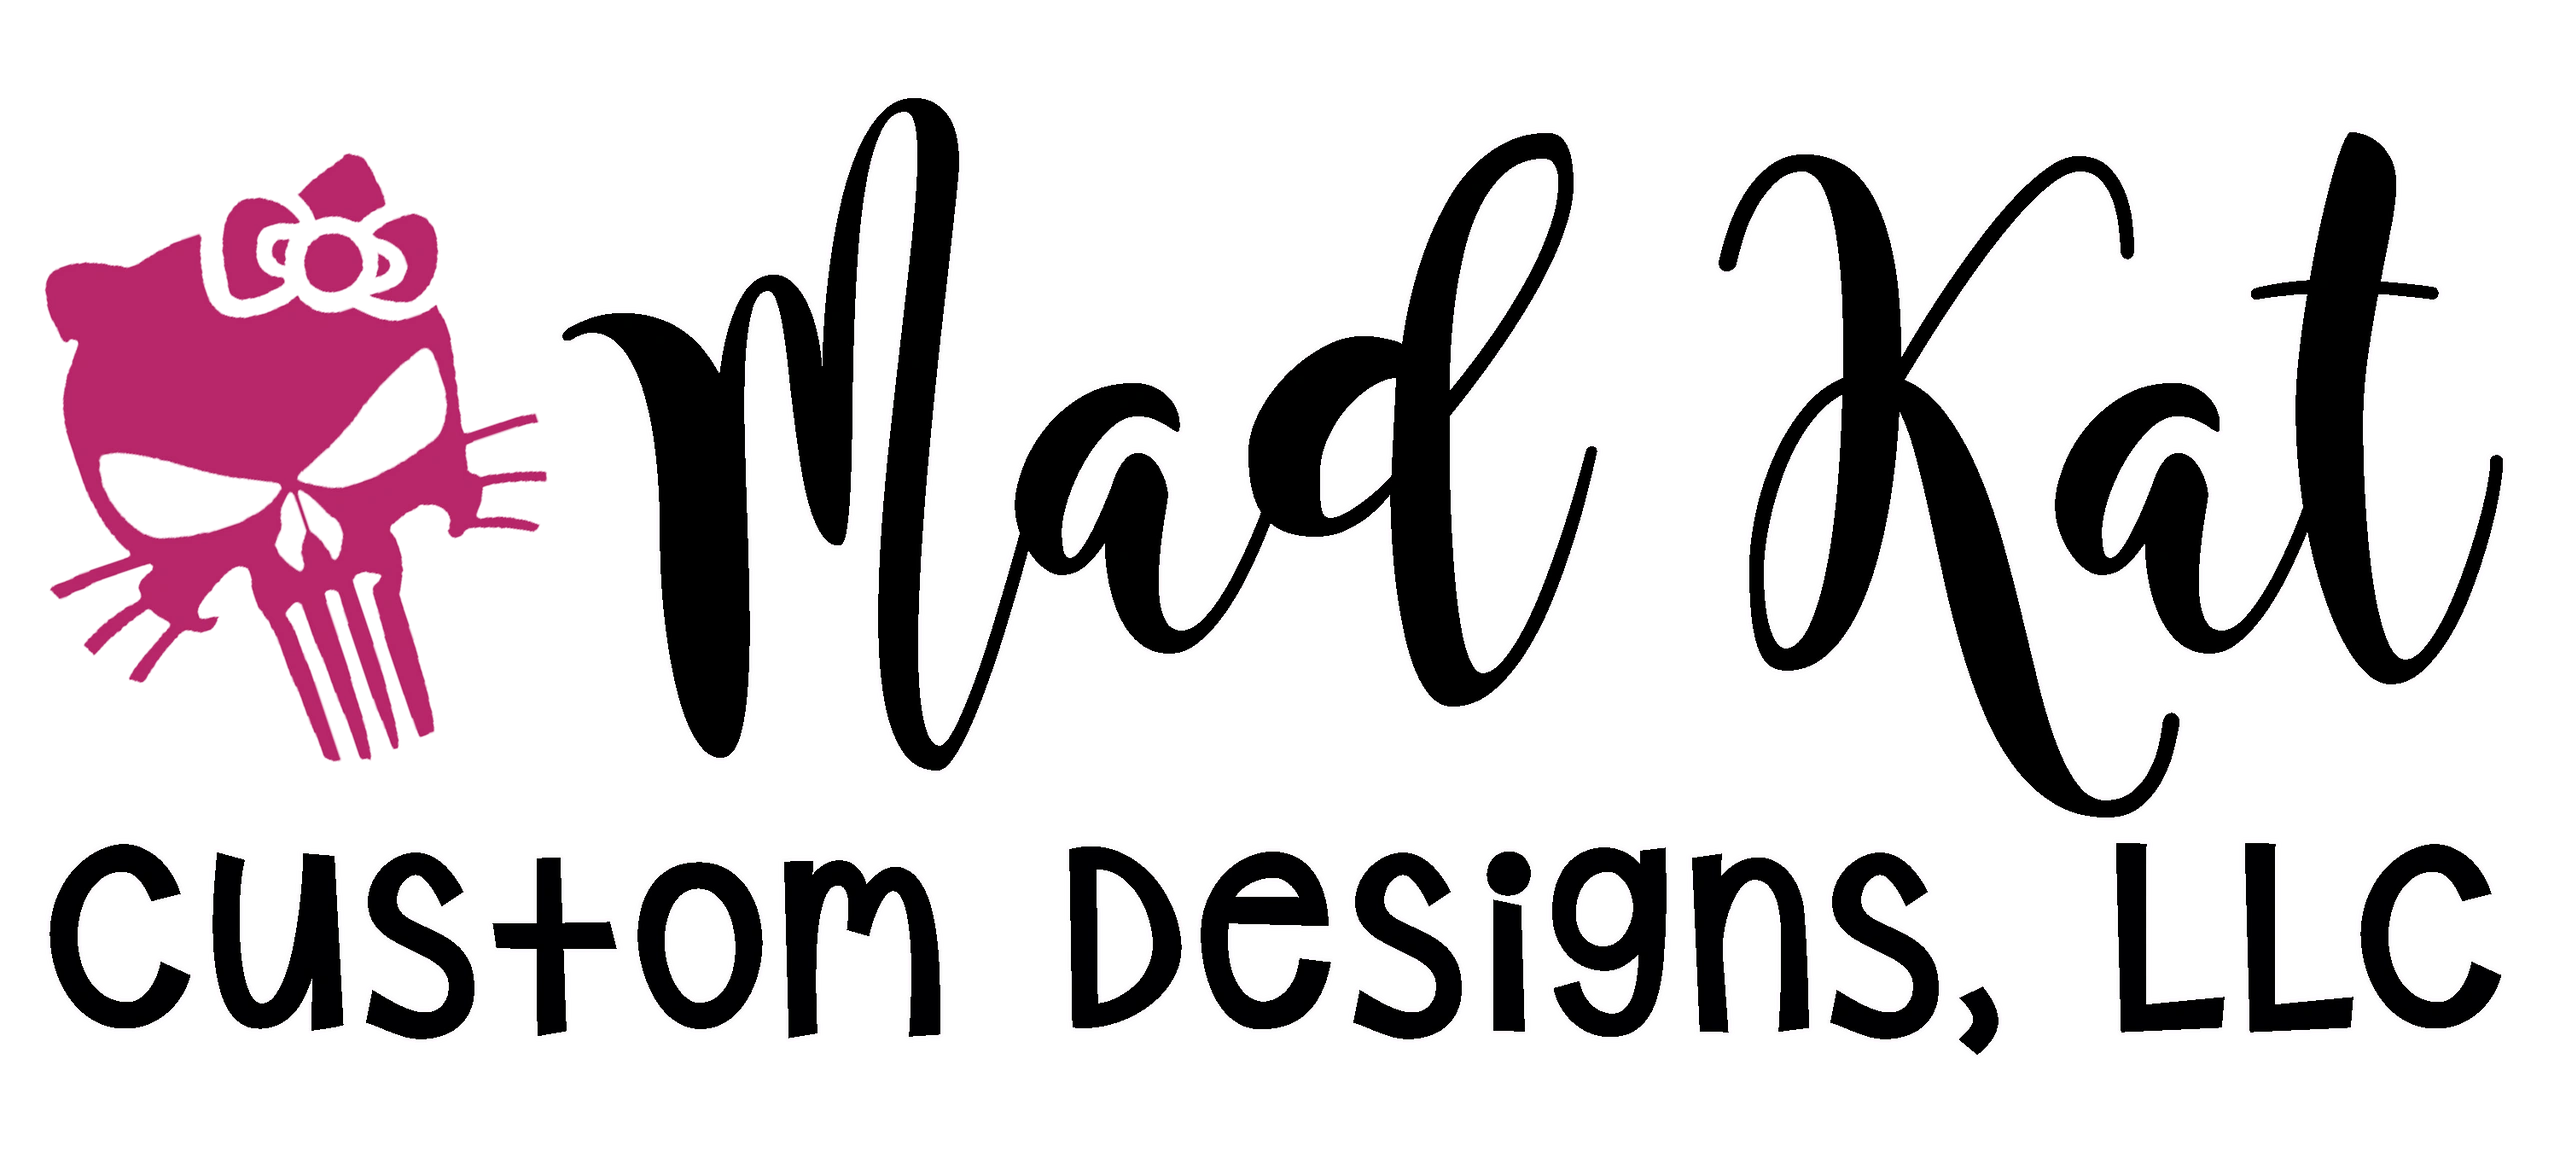 Clear Heat Tape – Mad Kat Custom Designs, LLC